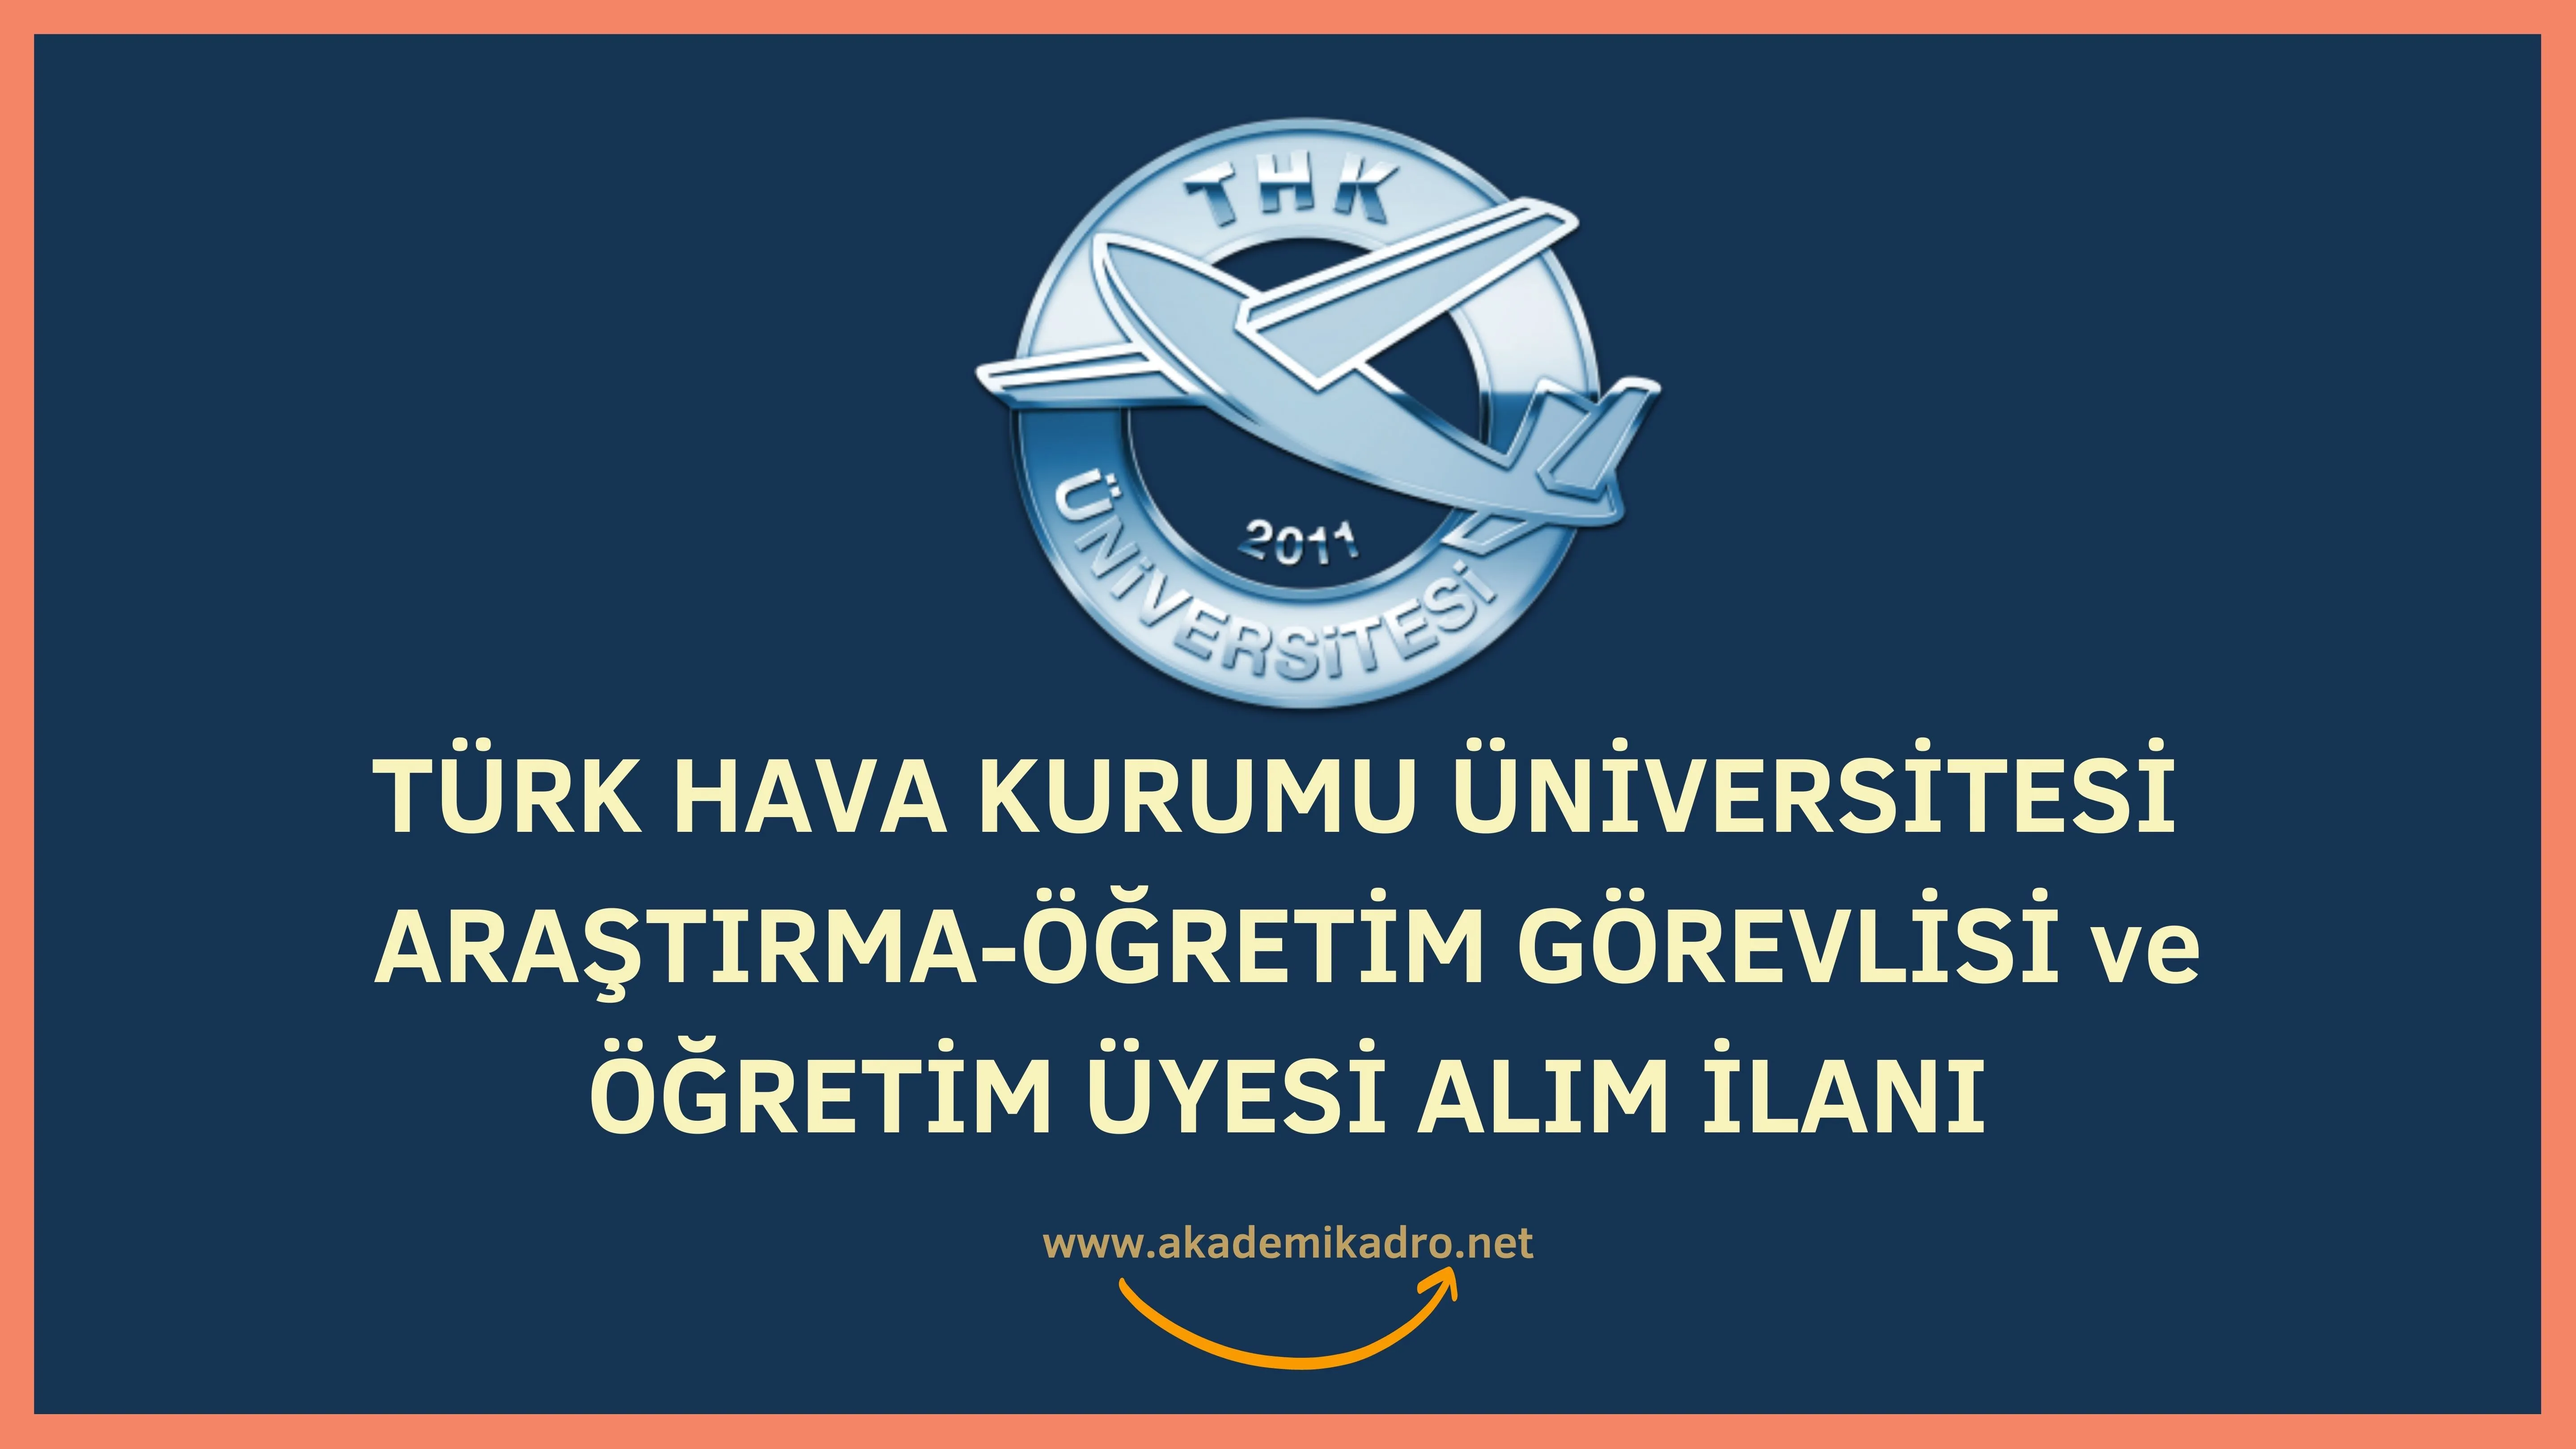 Türk Hava Kurumu Üniversitesi 2 Araştırma görevlisi, 3 Öğretim görevlisi ve 3 Öğretim üyesi alacak.